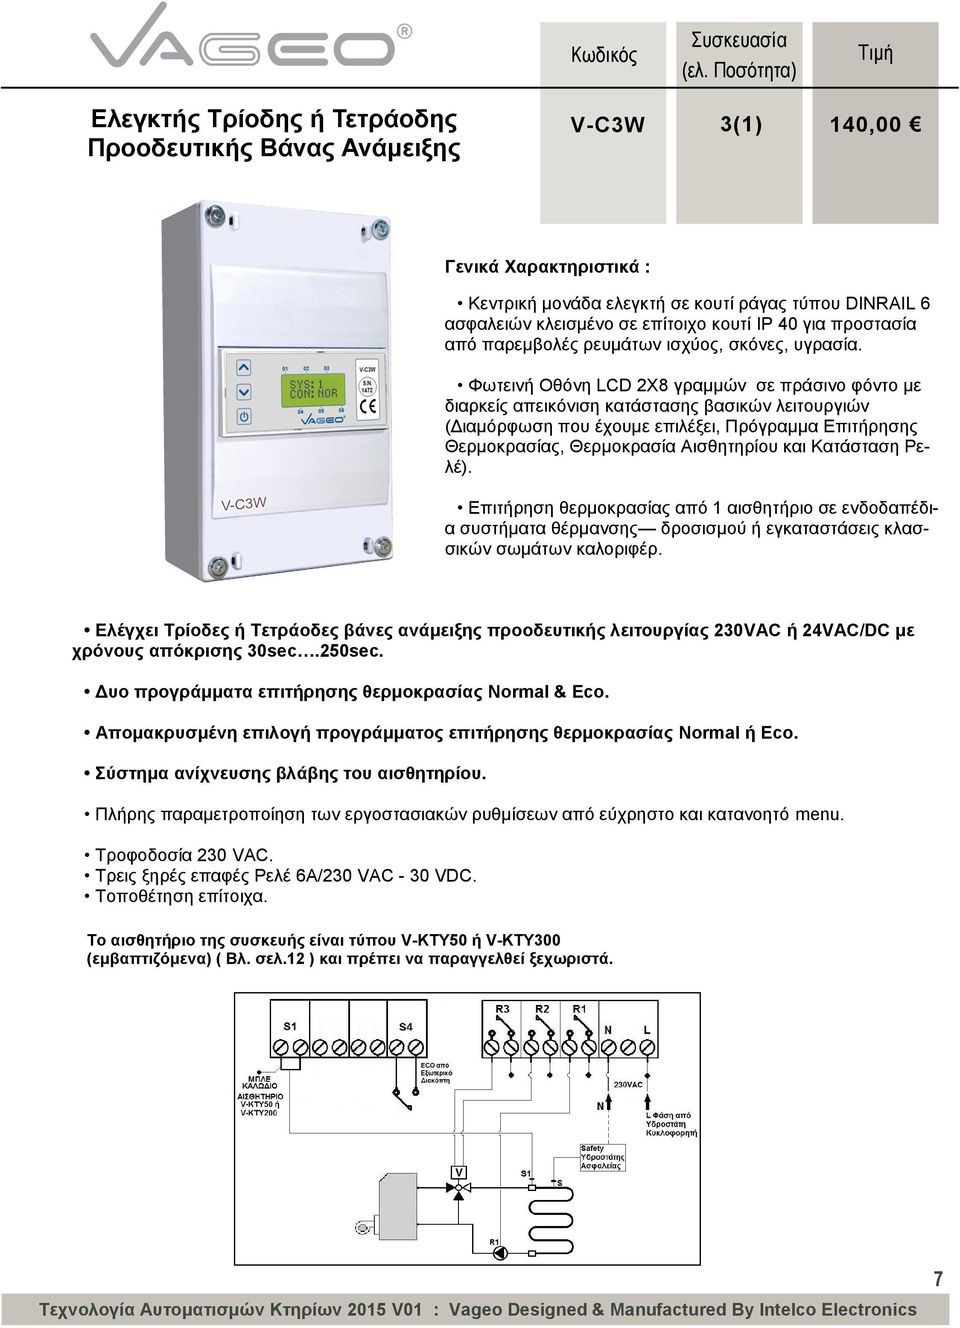 Φωτεινή Οθόνη LCD 2Χ8 γραμμών σε πράσινο φόντο με διαρκείς απεικόνιση κατάστασης βασικών λειτουργιών (Διαμόρφωση που έχουμε επιλέξει, Πρόγραμμα Επιτήρησης Θερμοκρασίας, Θερμοκρασία Αισθητηρίου και